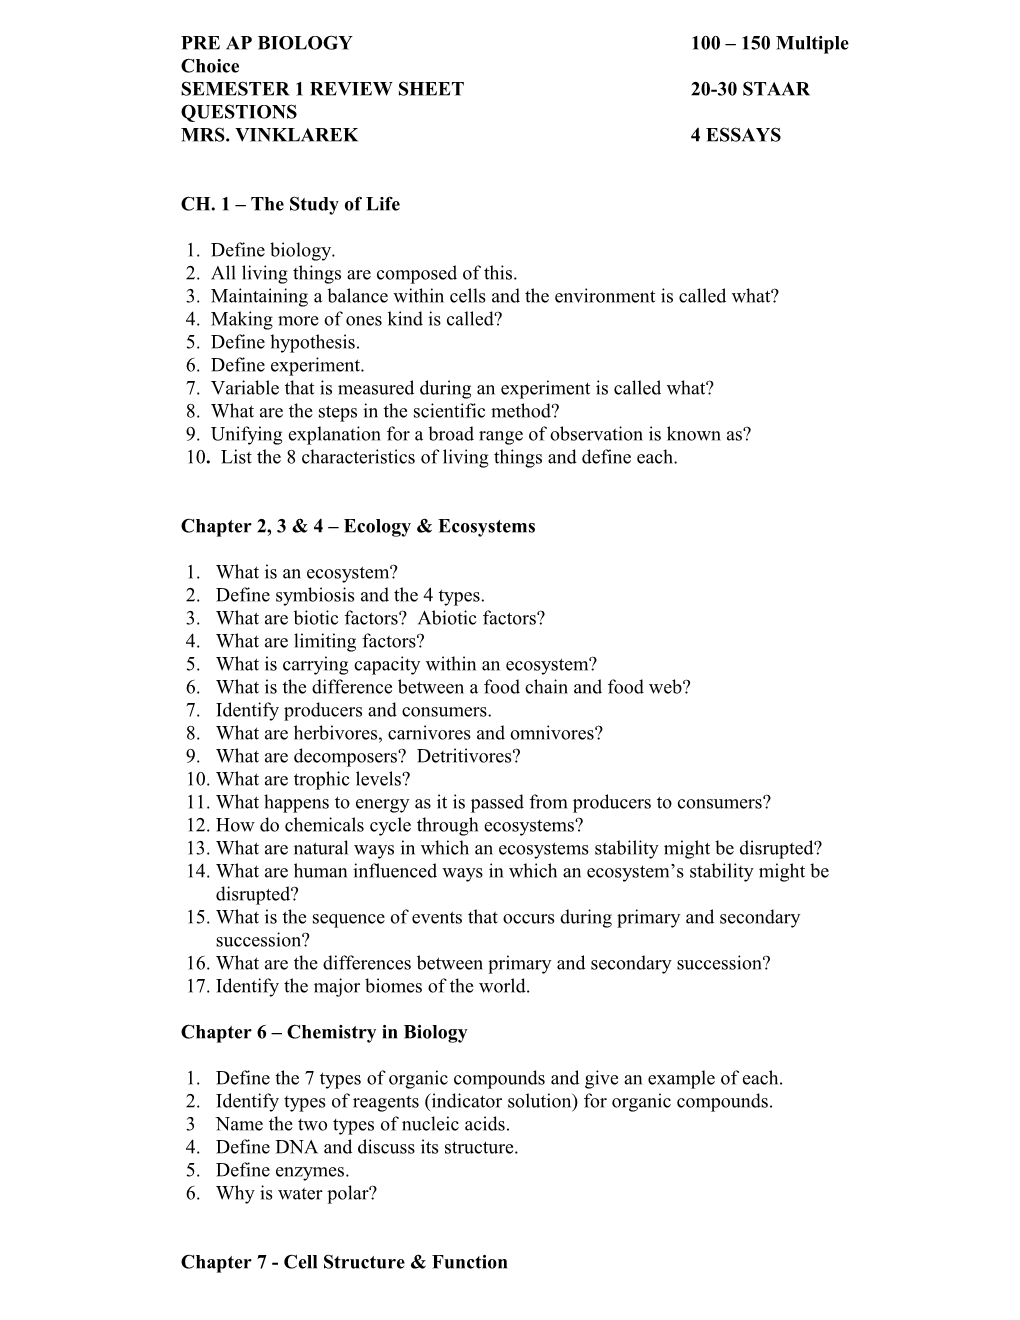 Semester 1 Review Sheet20-30 Staar Questions